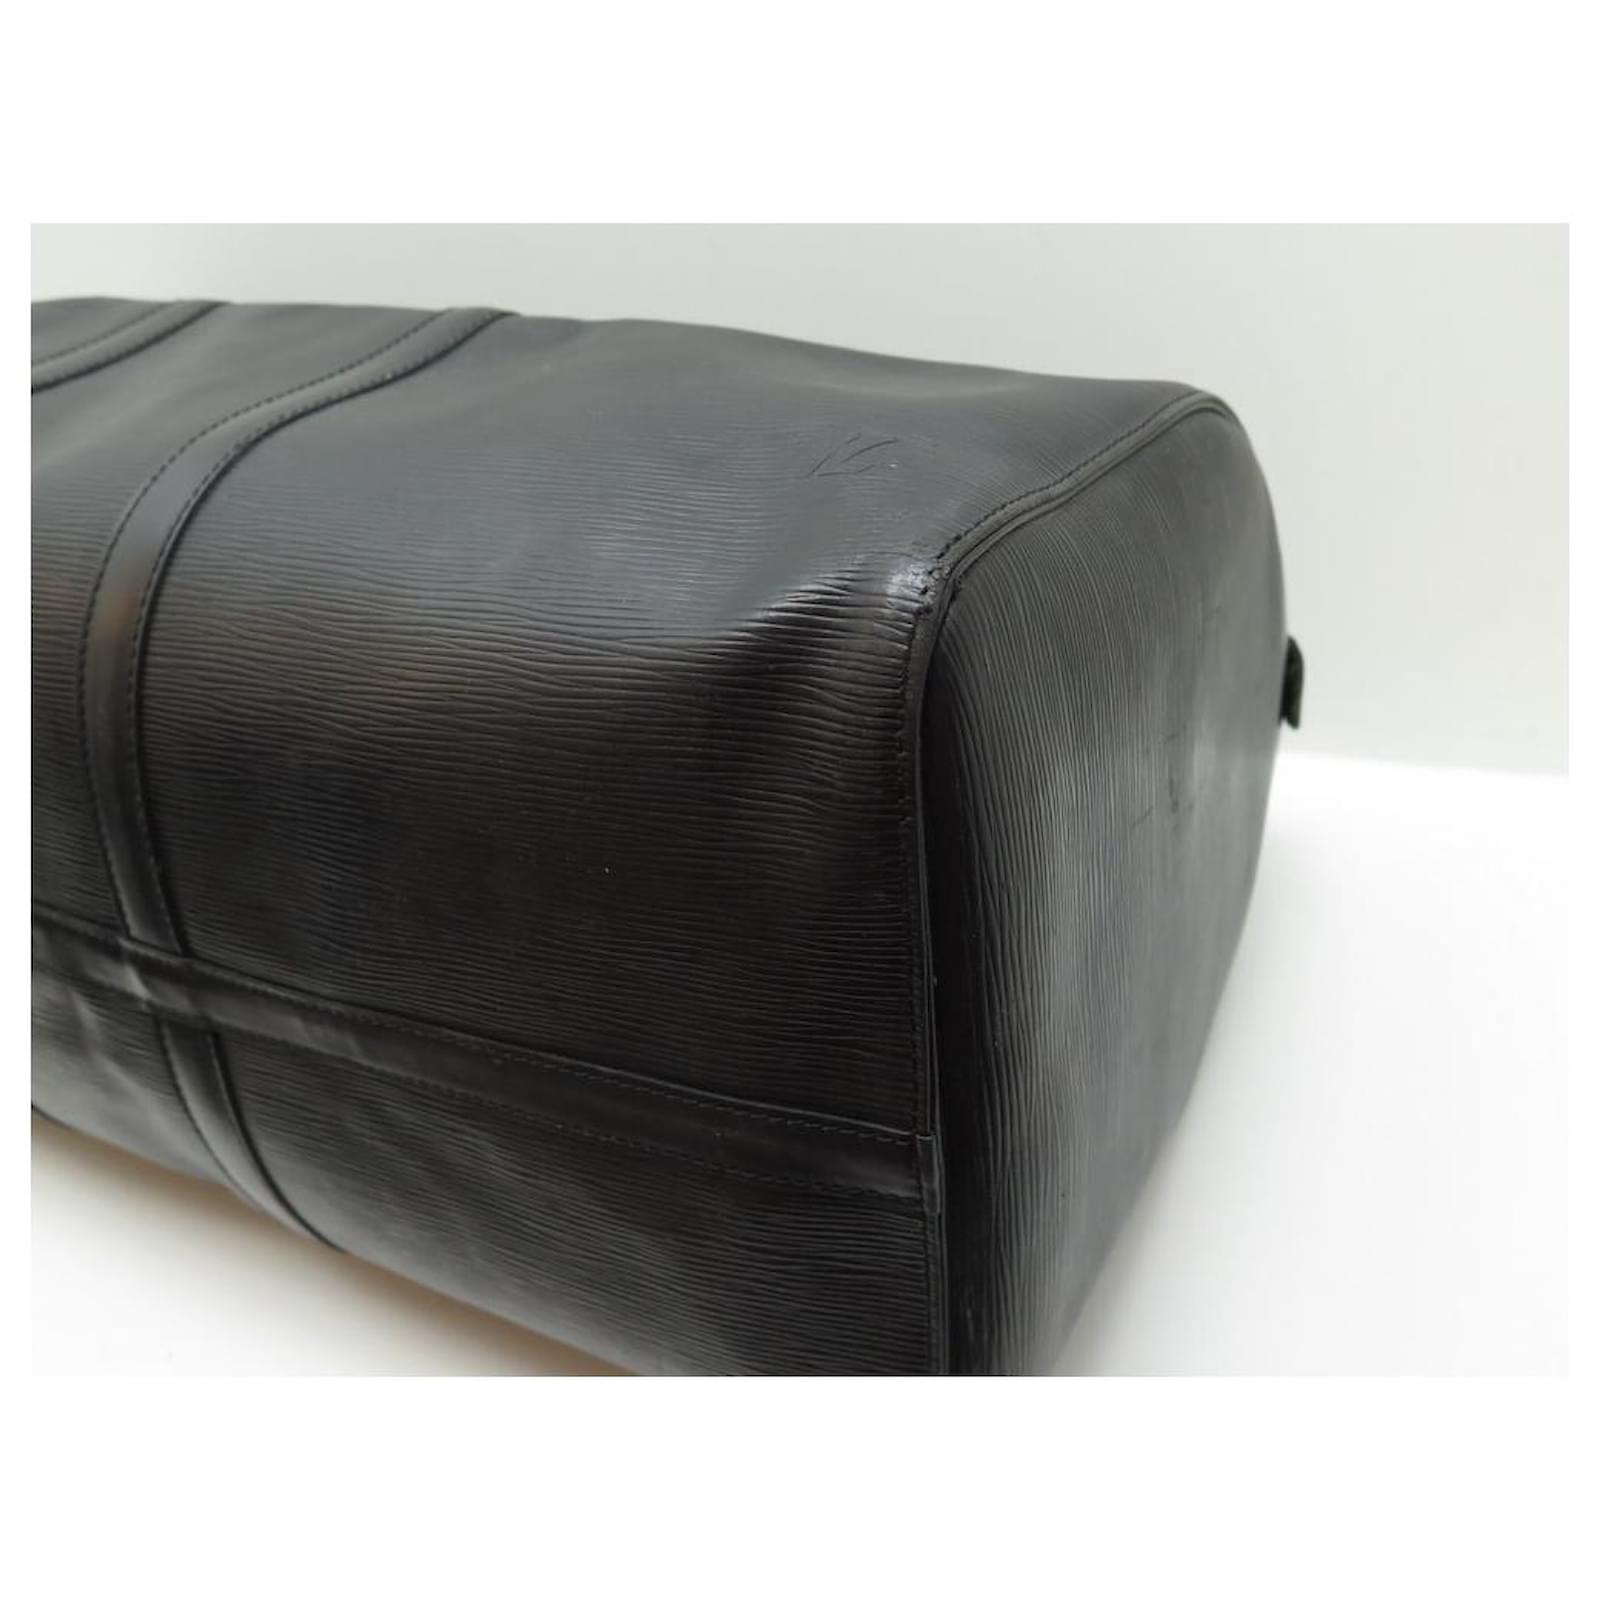 LOUIS VUITTON Epi Keepall 55 Noir Black M42952 Travel Bag Duffle Leather  Auth